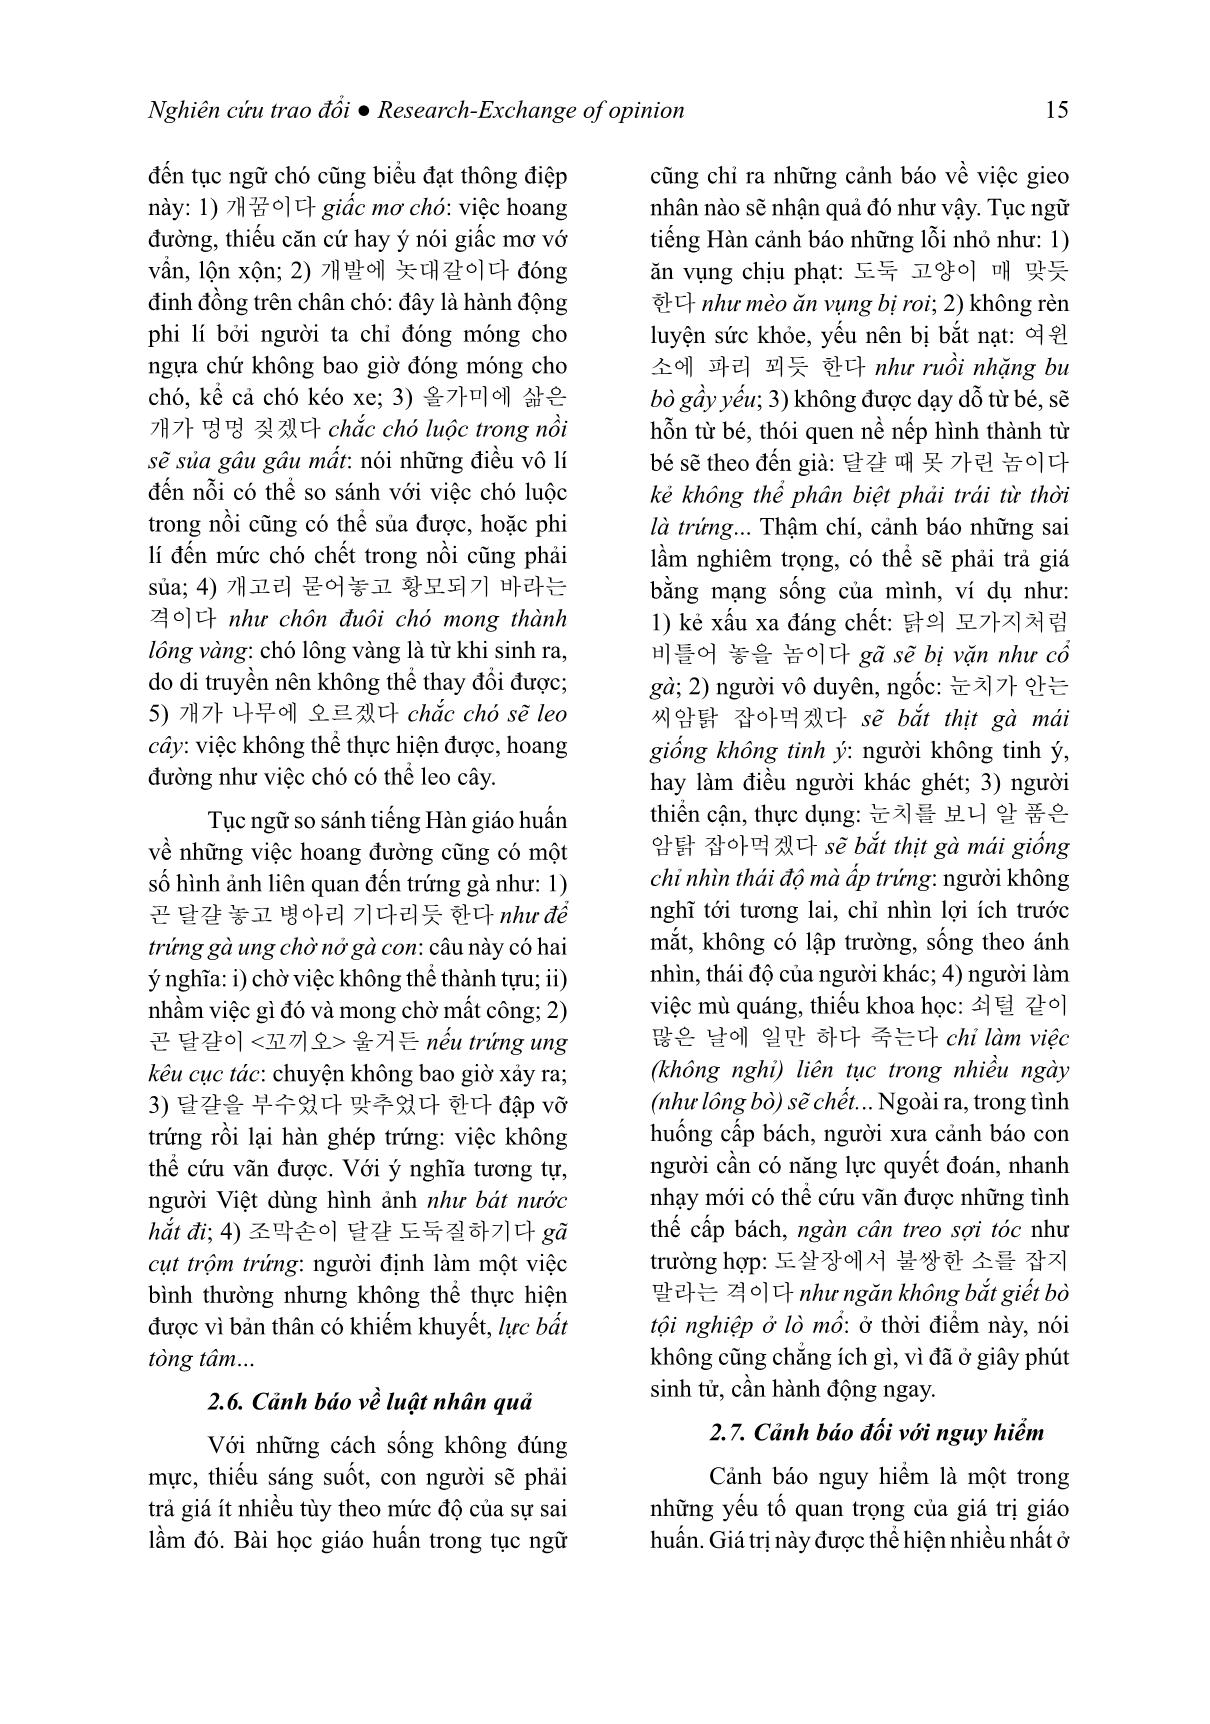 Giá trị giáo huấn của tục ngữ so sánh tiếng Hàn (Trọng tâm là các đơn vị có yếu tố chỉ con giáp) trang 6